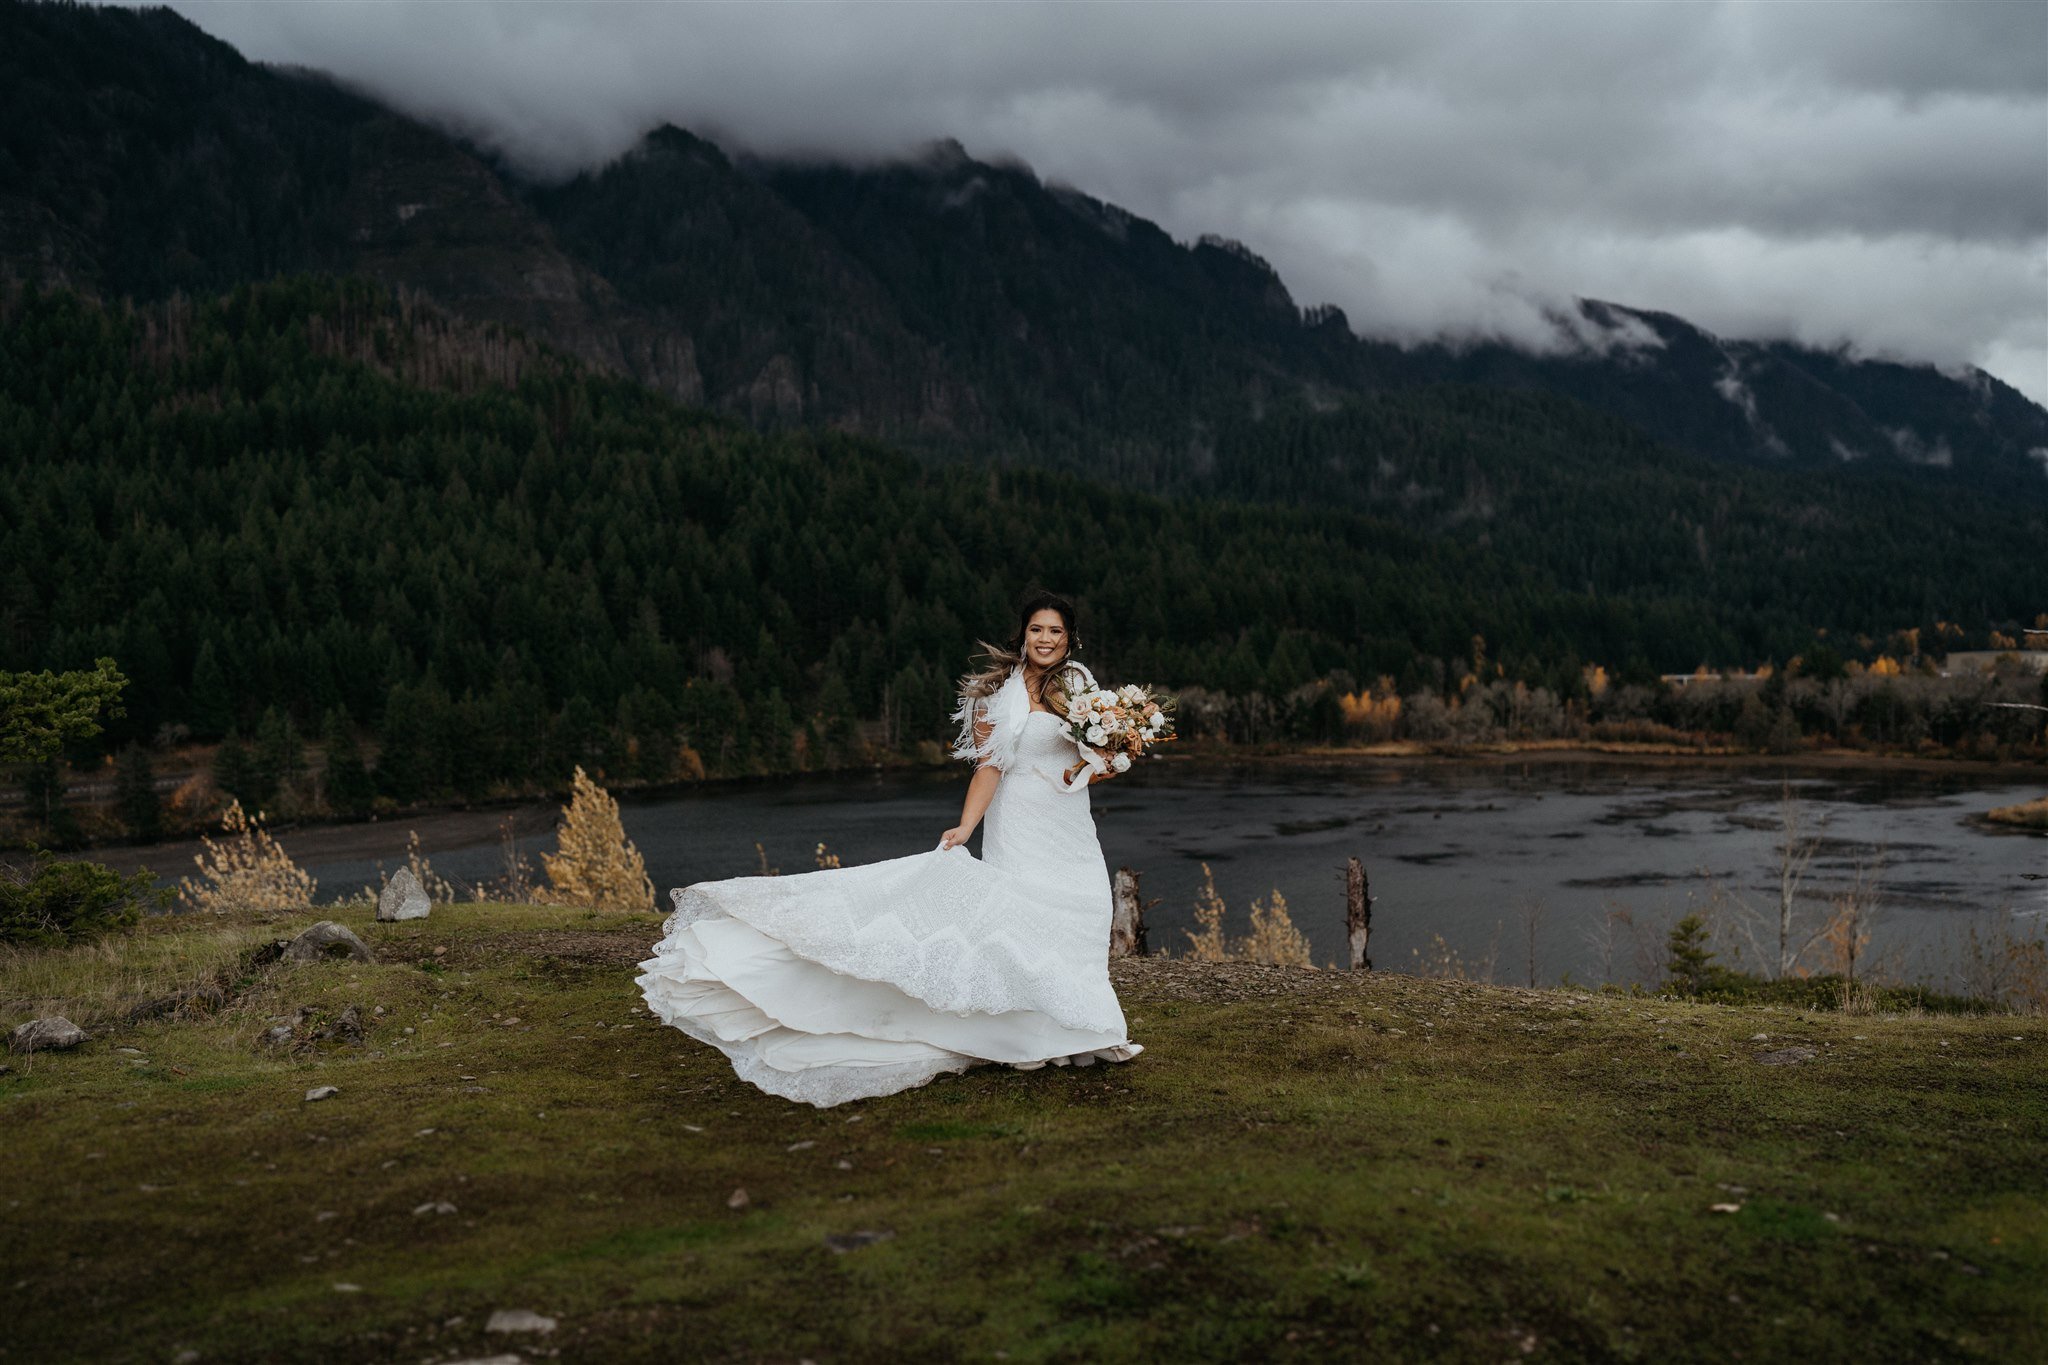 Bridal portraits at Oregon crest overlook